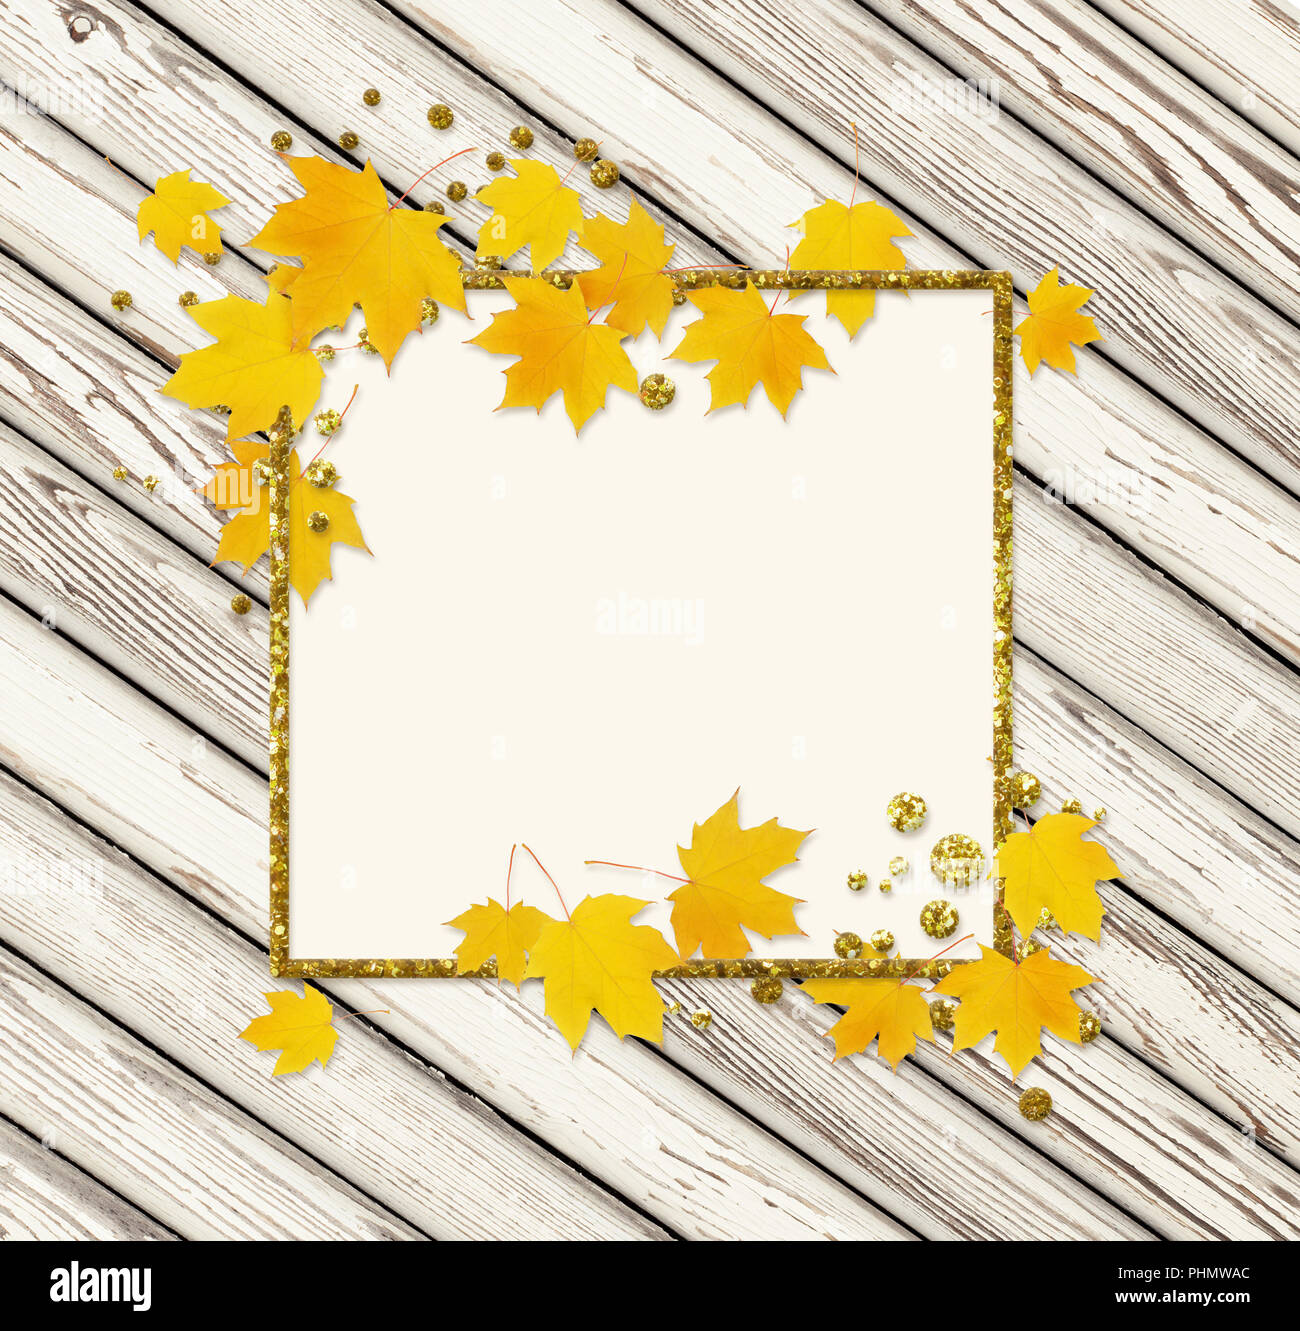 Rameau d'érable de l'automne avec des feuilles jaunes et un golden glitter blanc sur fond de bois. Mise à plat. Vue d'en haut. Banque D'Images